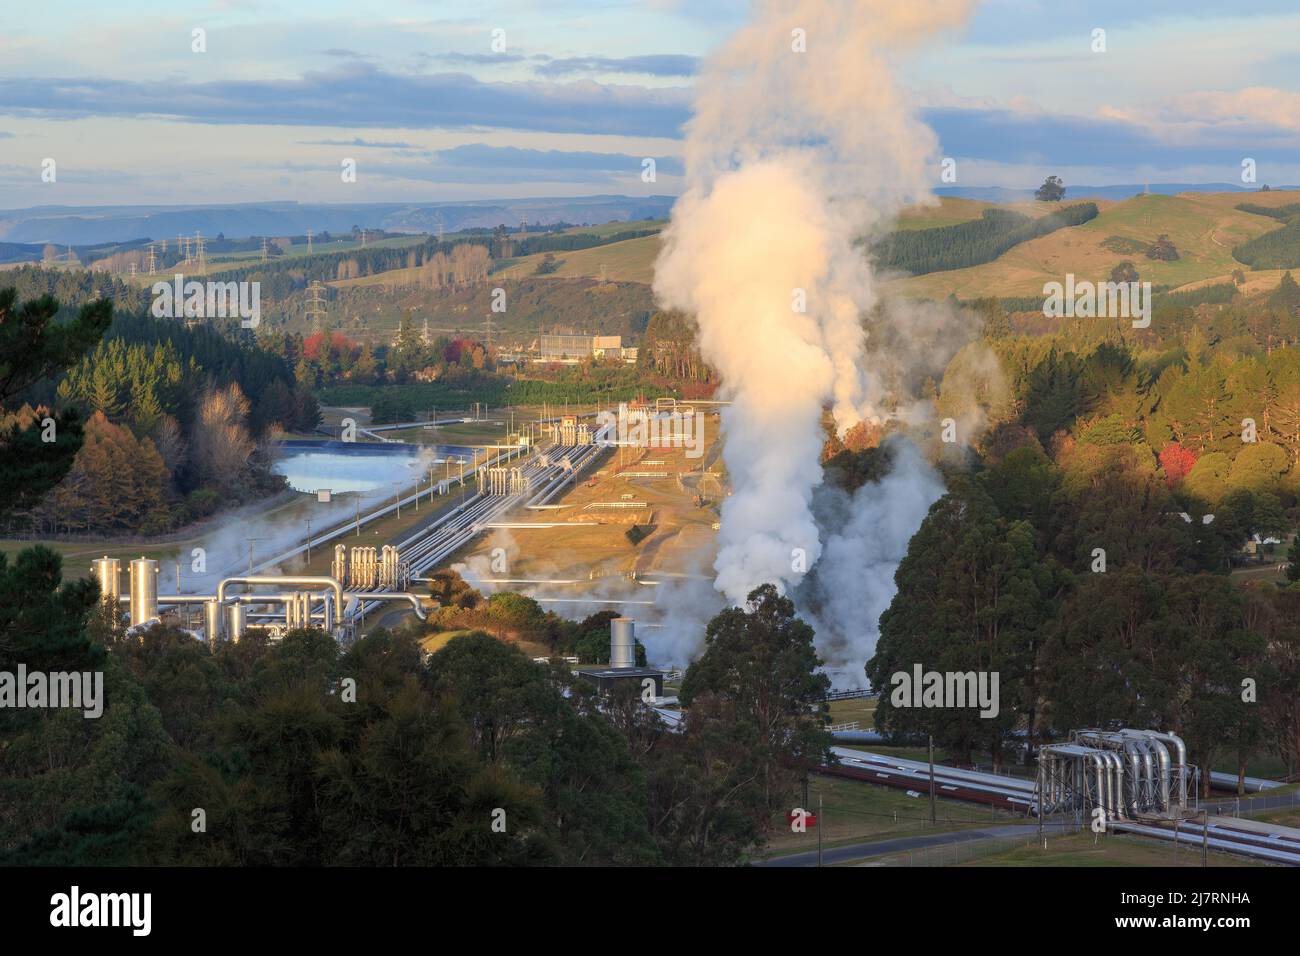 La vapeur s'élève de la centrale géothermique de Wairakei, près de Taupo, en Nouvelle-Zélande Banque D'Images